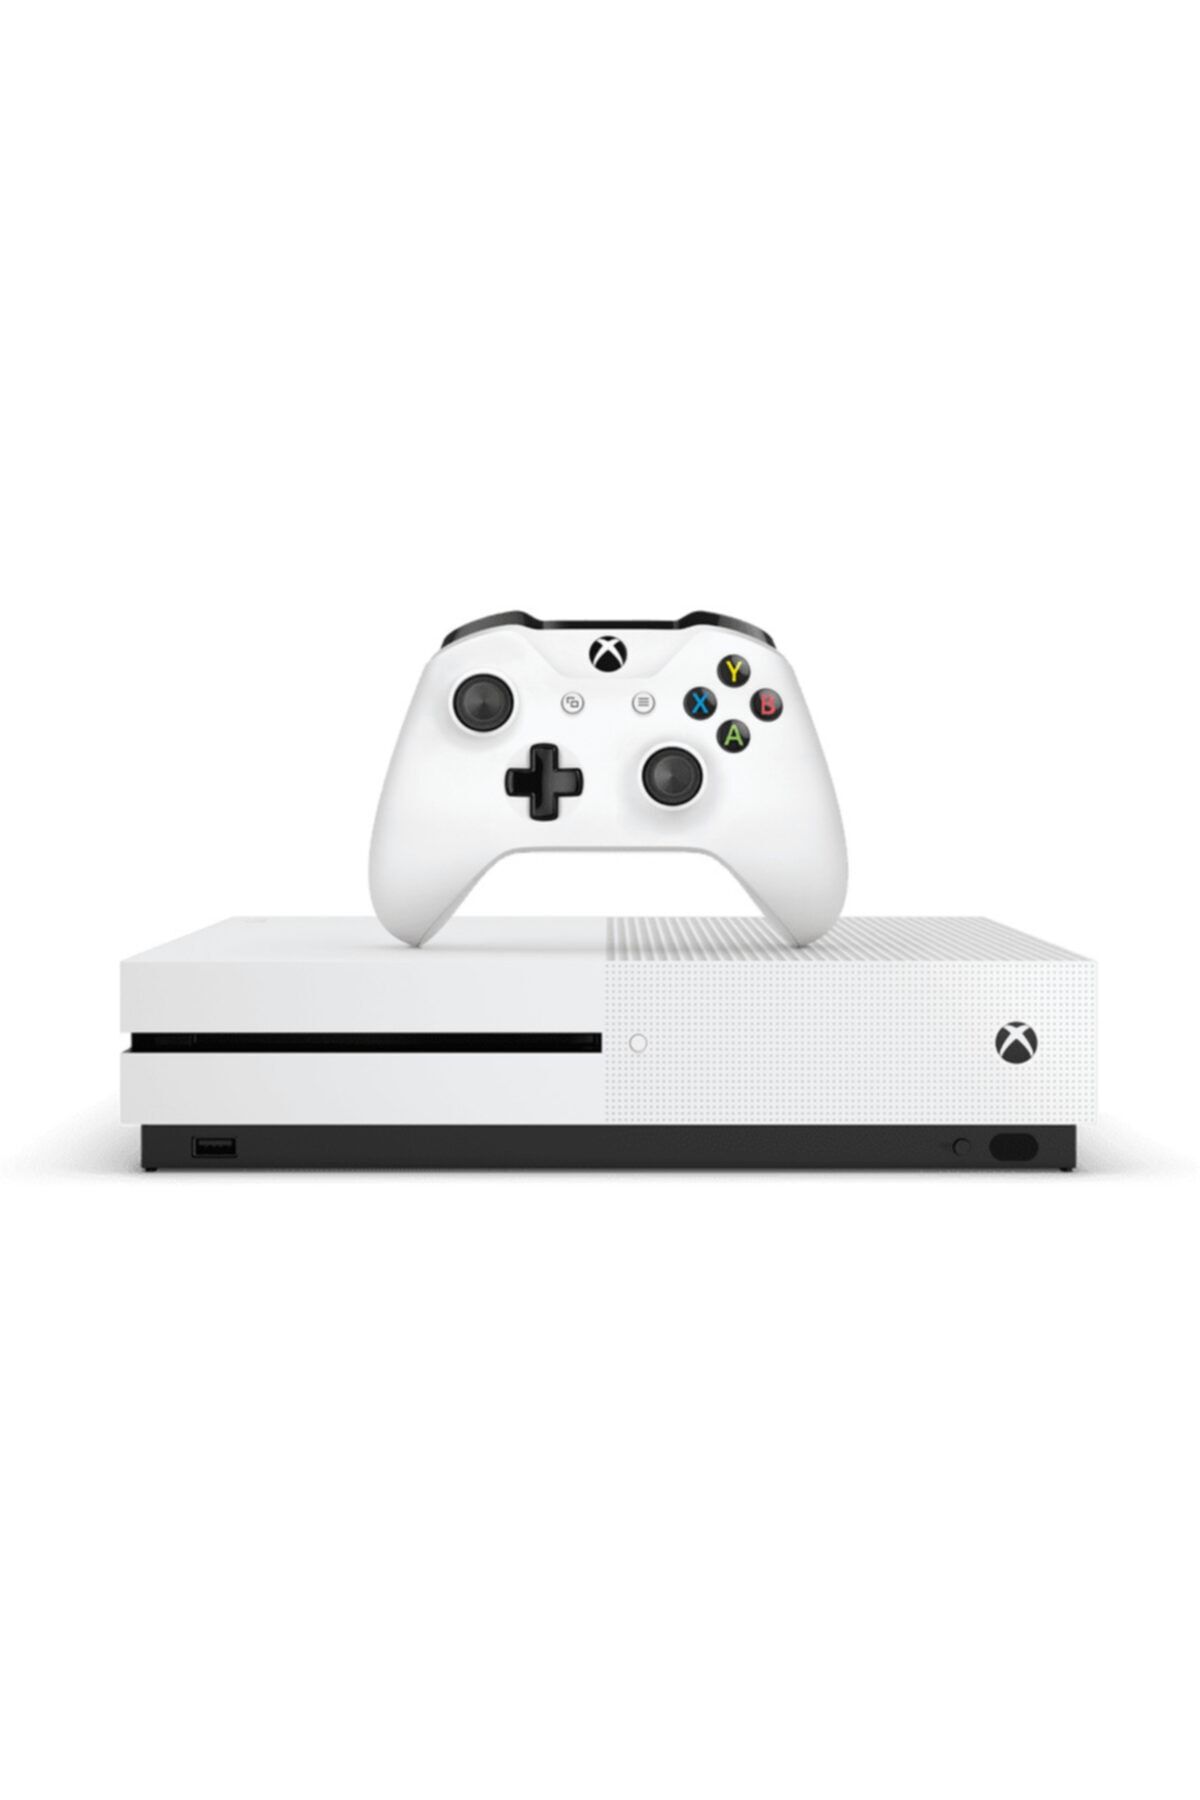 Xbox one s white. Xbox one s 500gb. Xbox one s 1. Xbox one s 1tb 1681. Xbox one консоль.